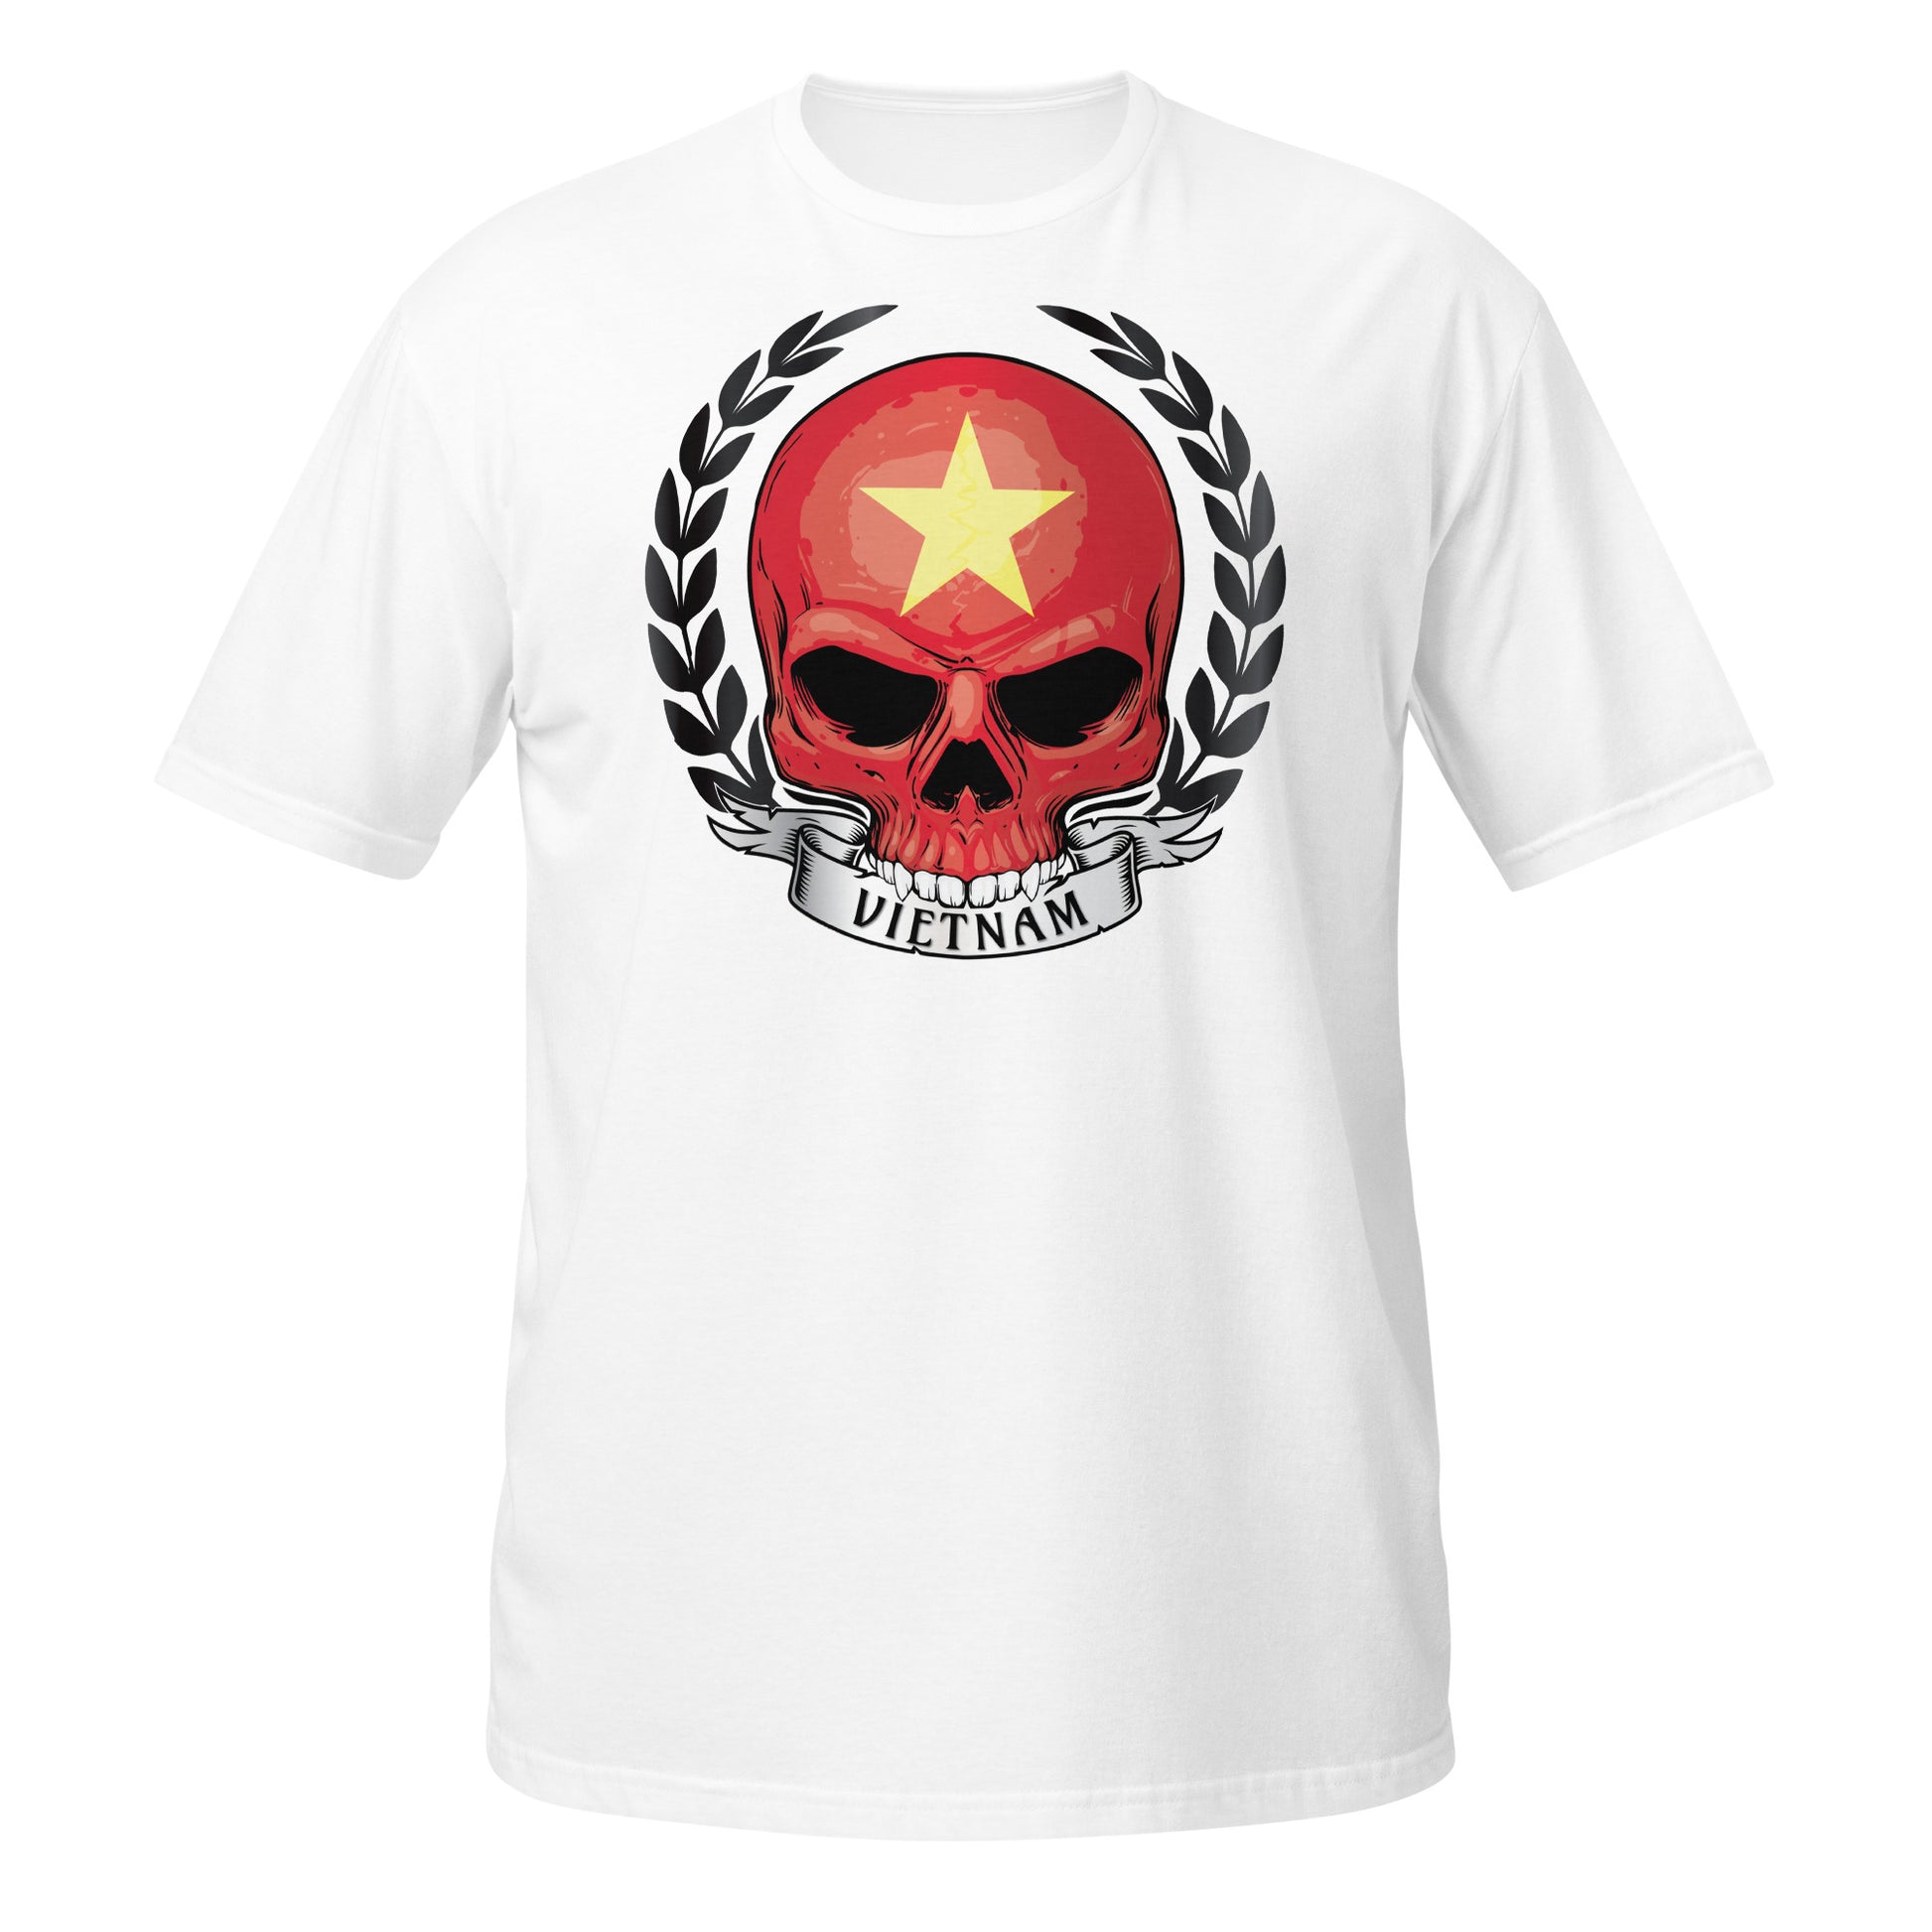 Skull Shirt For Vietnam Lover / Honor Vietnam T-Shirt White Color